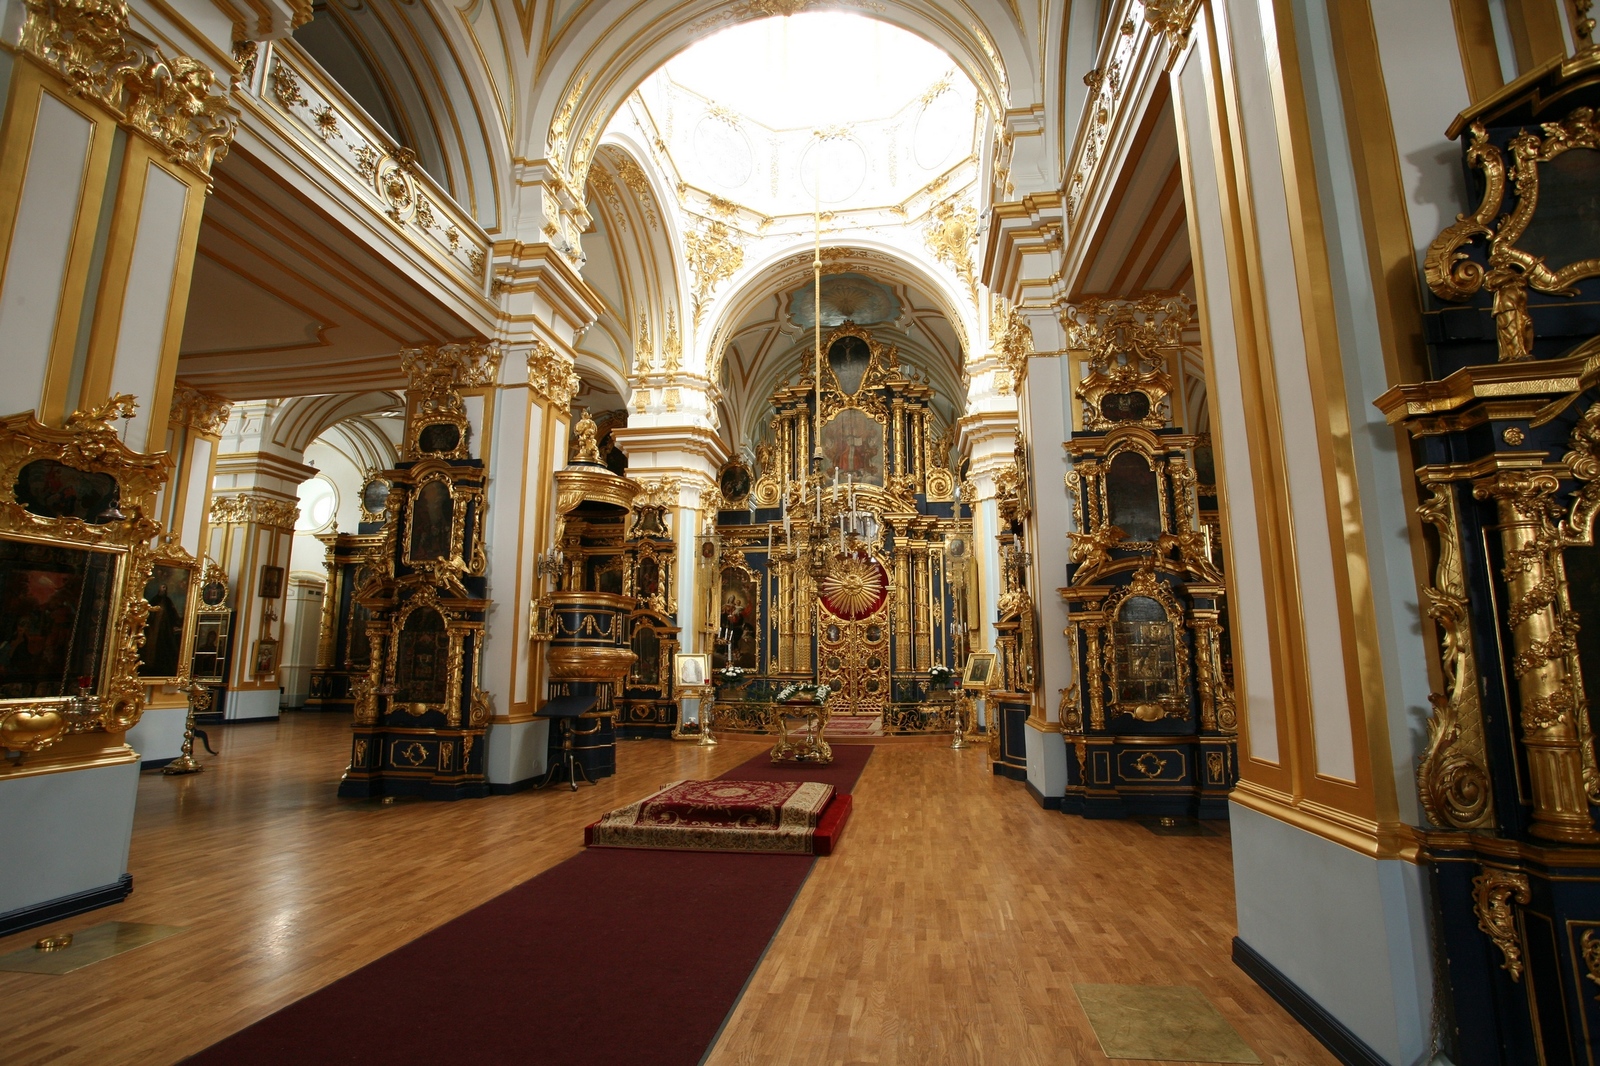 никольский собор в санкт петербурге